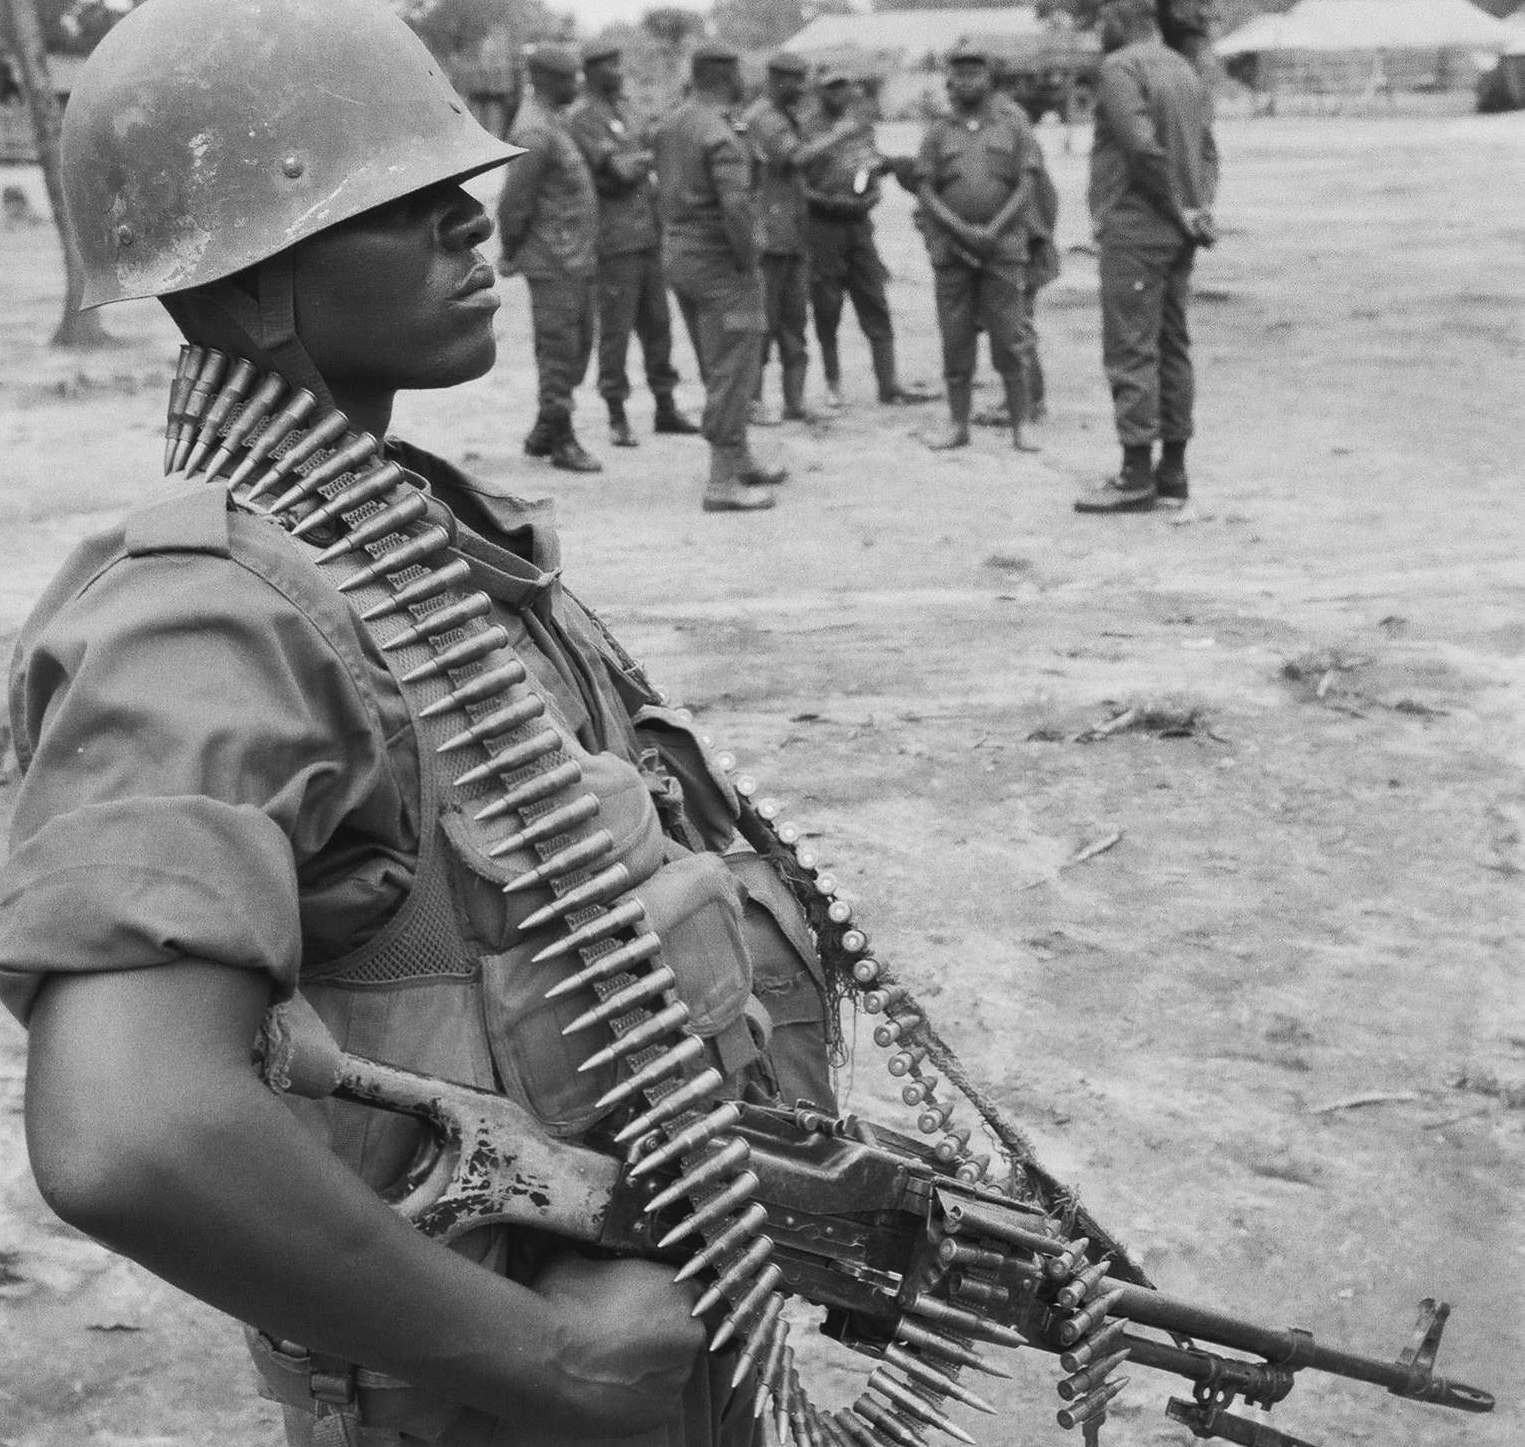 Die kongolesische Regierungsarmee kämpft hier gegen die christliche „Widerstandsarmee des Herrn“ (Lord’s Resistance Army, LRA). Diese will einen Gottesstaat auf der Basis der Zehn Gebote errichten. Den Regierungstruppen gelingt es nur selten, der beispiellosen Brutalität der Rebellen Einhalt zu gebieten.